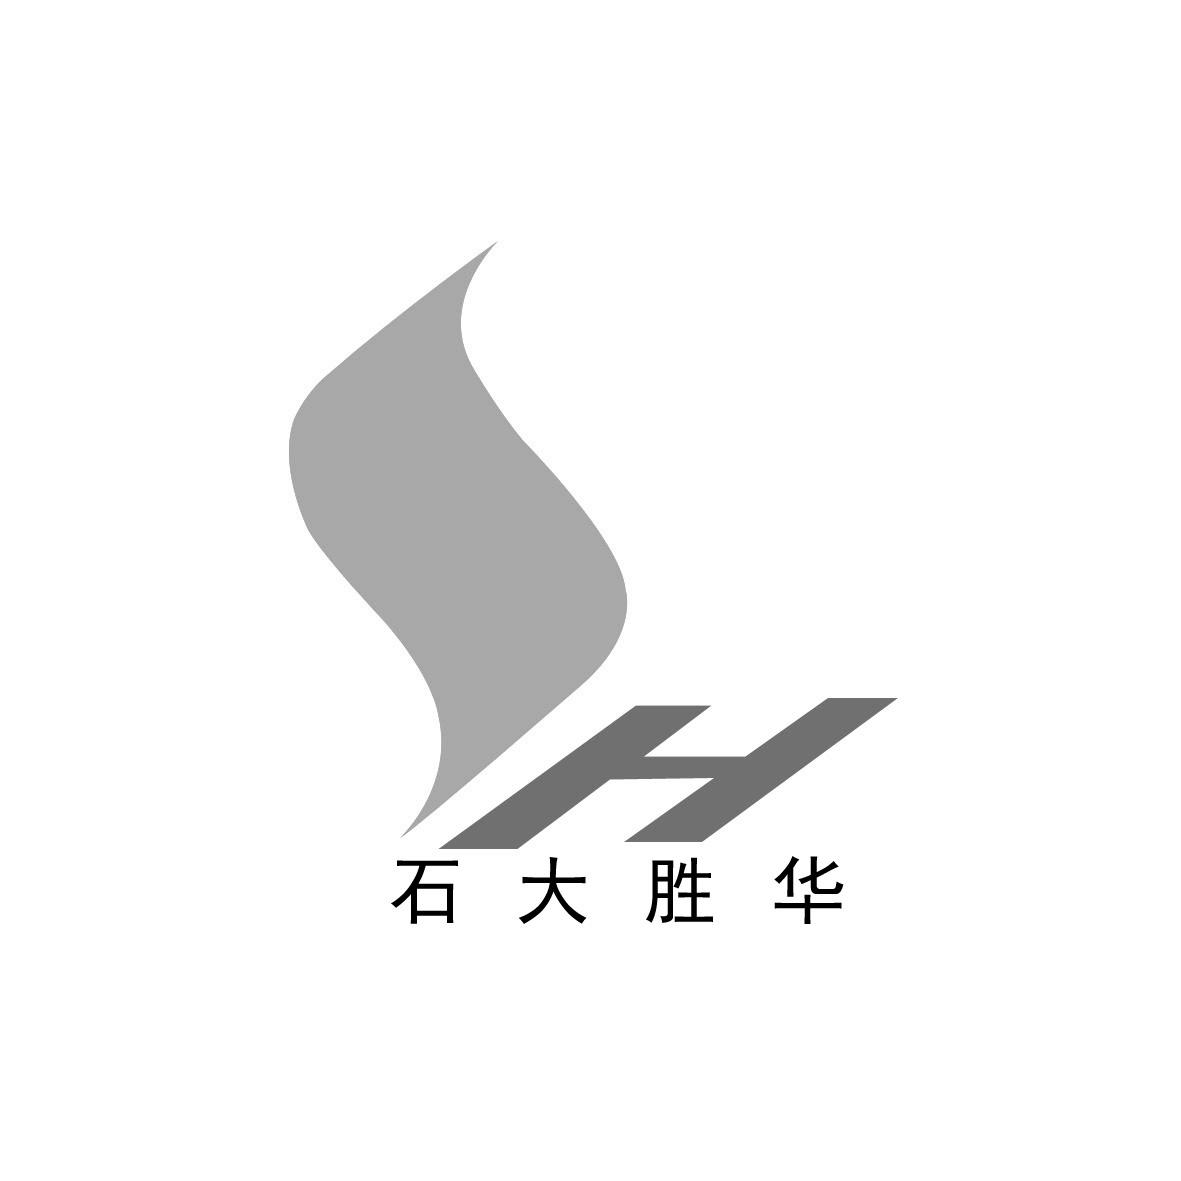 石大勝華-603026-山東石大勝華化工集團股份有限公司